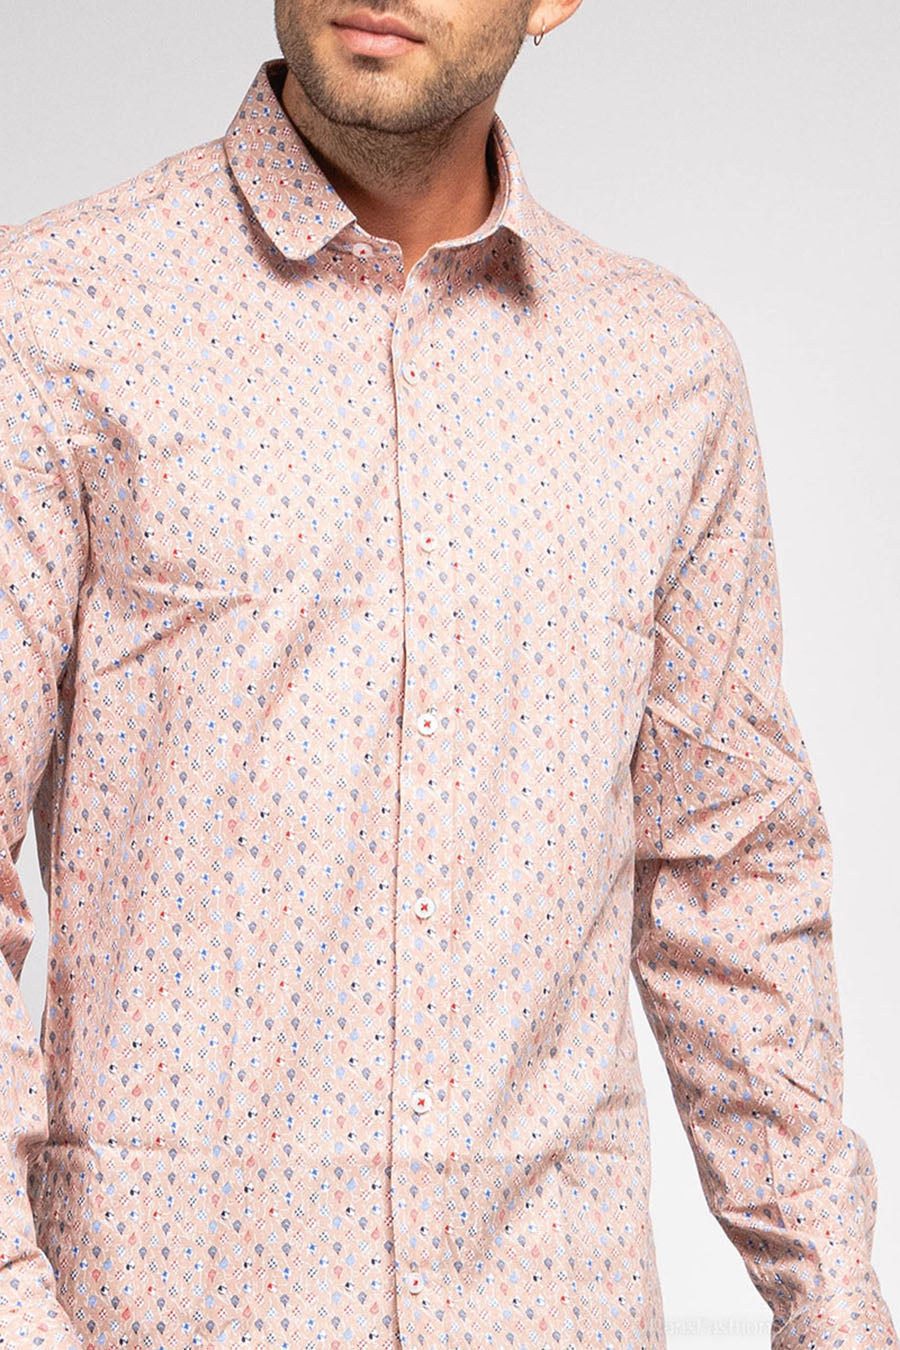 Ανδρικό πουκάμισο Aldwyn, Ροζ 2